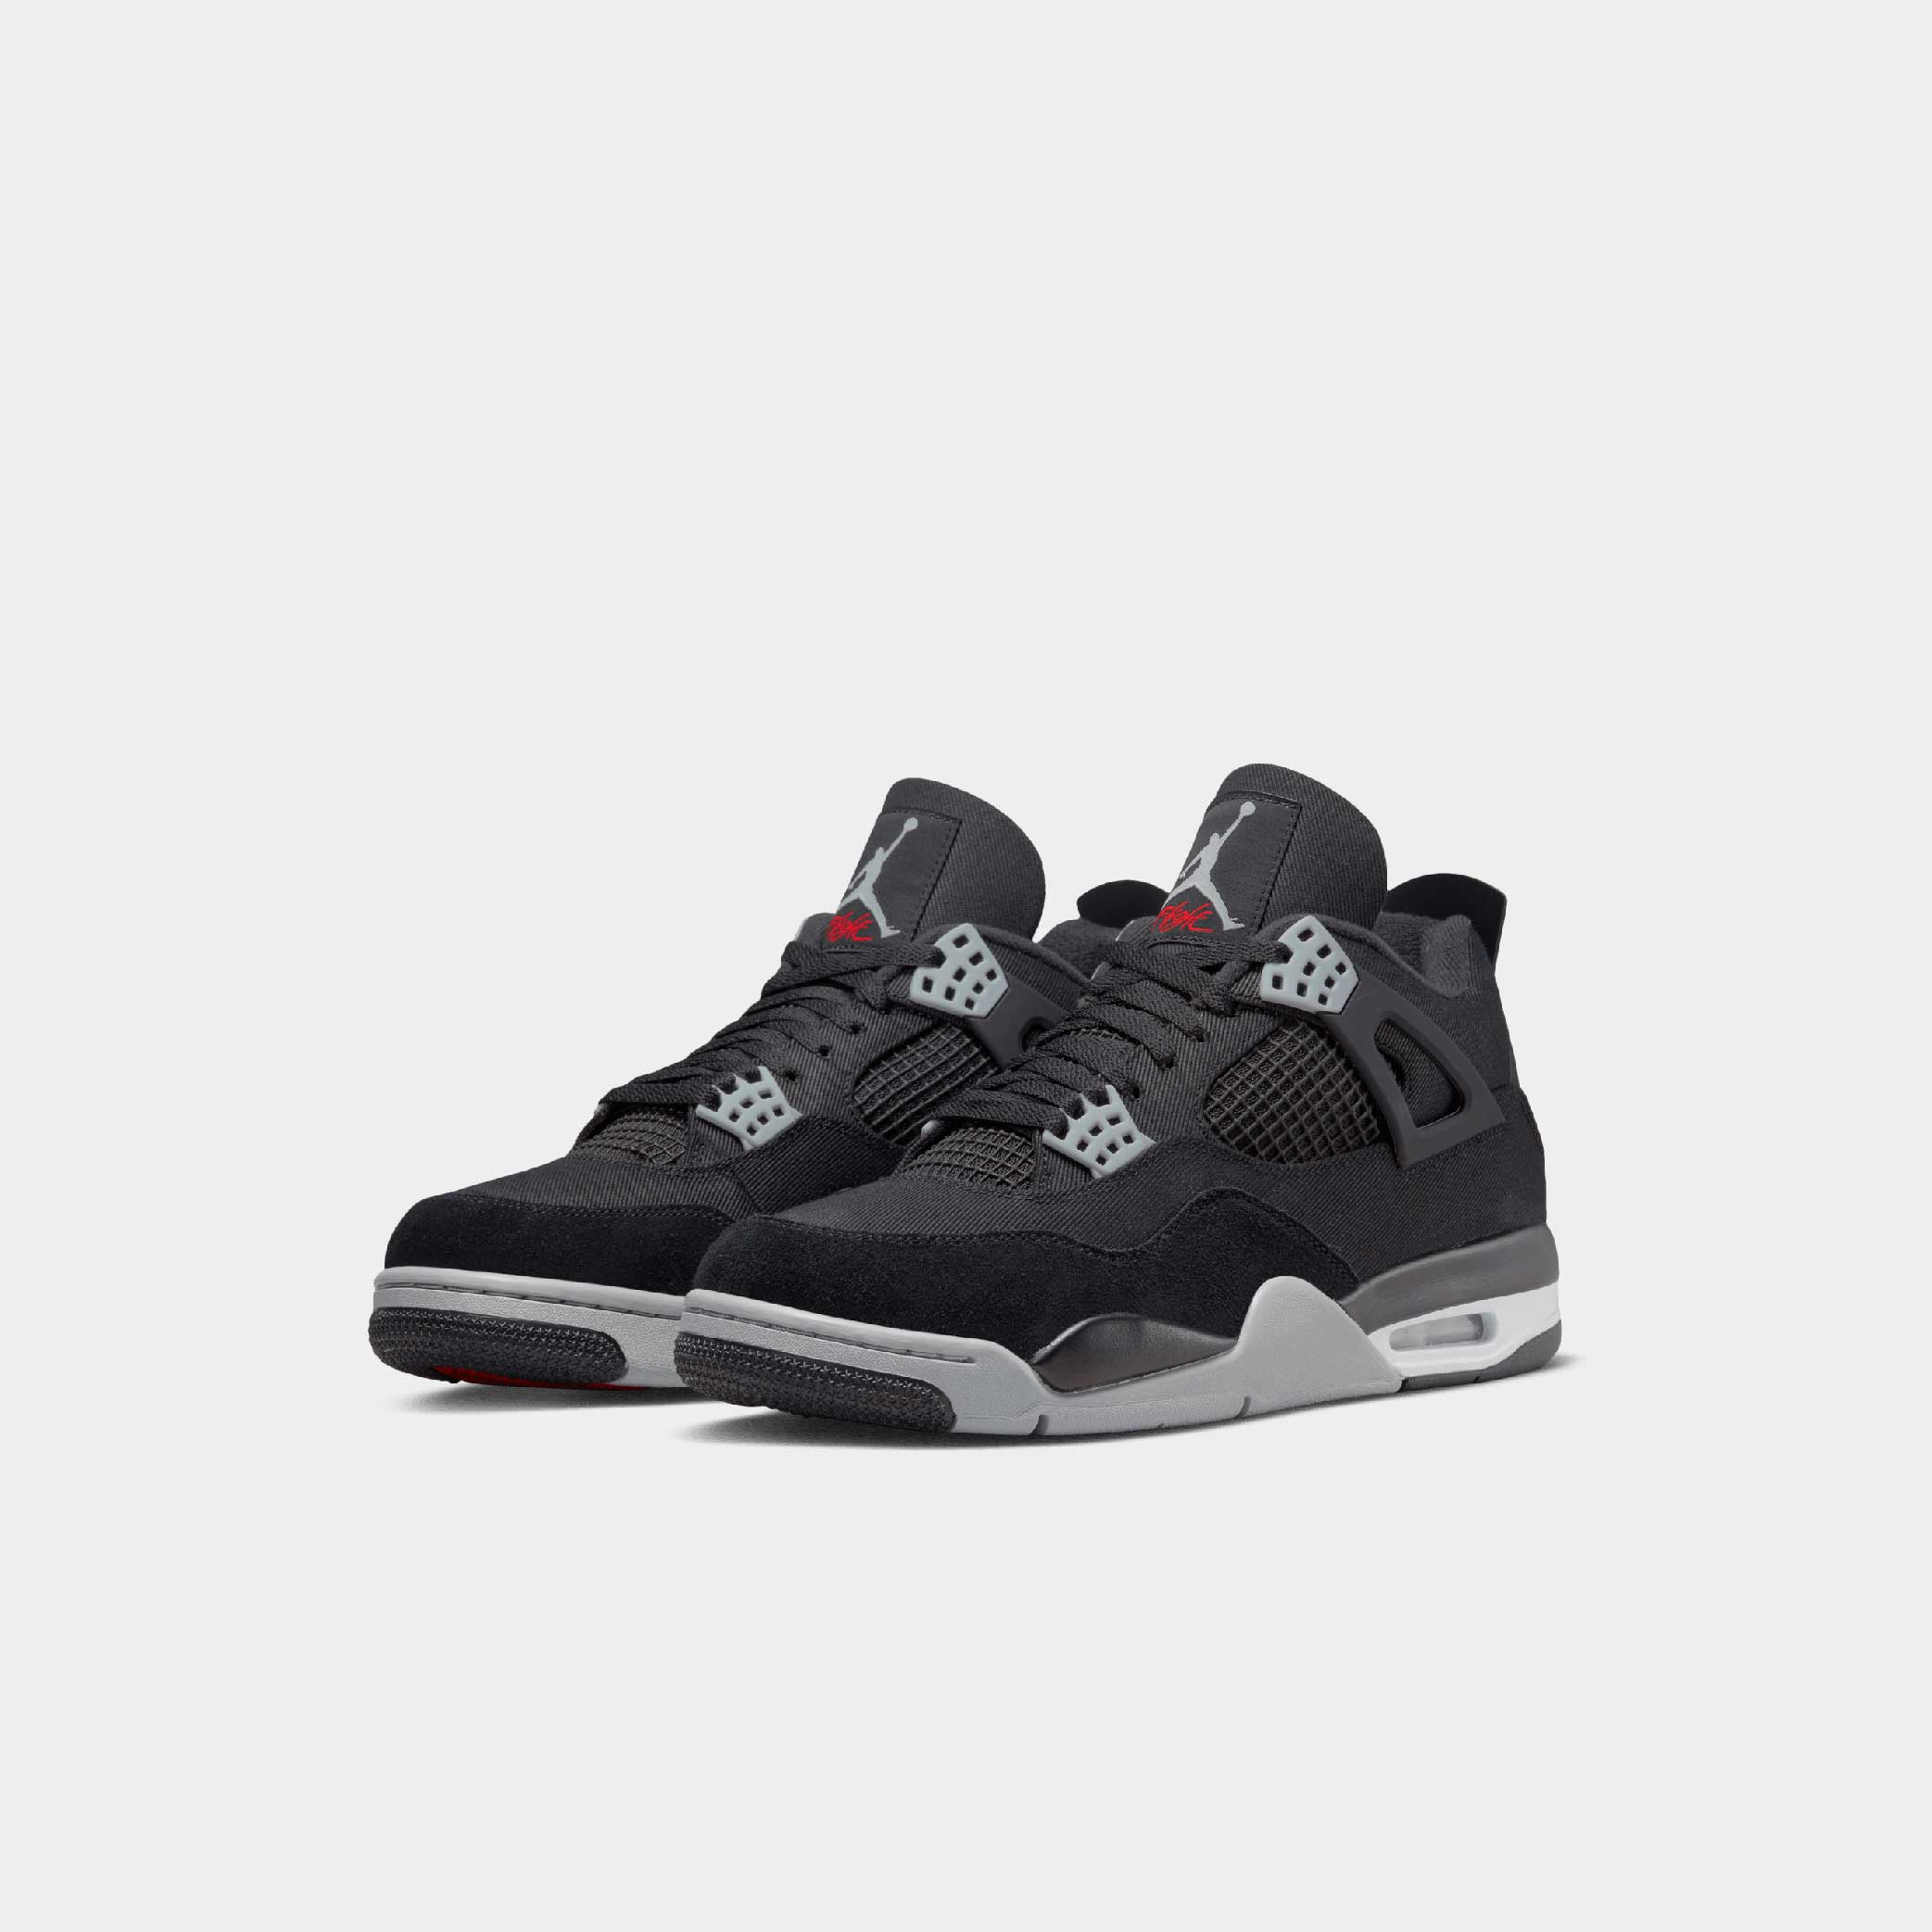 22,050円Nike Air Jordan 4 Black and Light Steel